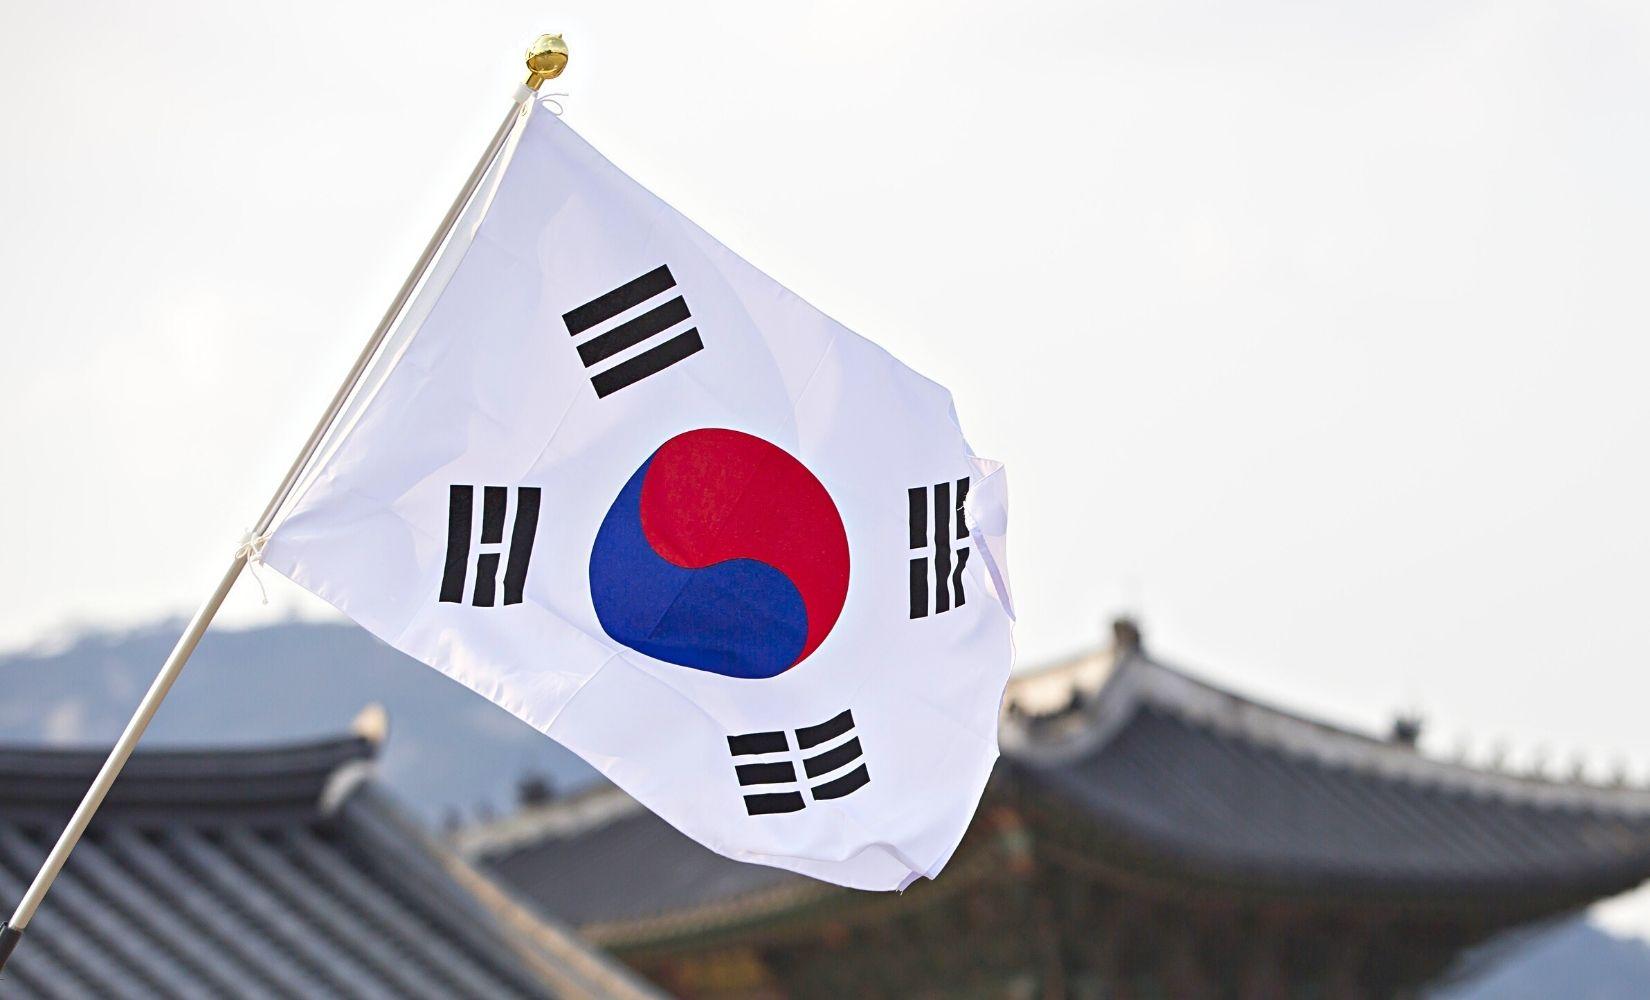 Taegeukgi: Taegeukgi là cách gọi khác của lá cờ Hàn Quốc, được rất nhiều người yêu thích vì ý nghĩa và đẹp mắt. Nếu bạn yêu thích lá cờ Hàn Quốc và muốn tìm hiểu thêm về Taegeukgi, hãy ghé thăm hình ảnh liên quan để khám phá những bí mật thú vị liên quan đến loại cờ này.